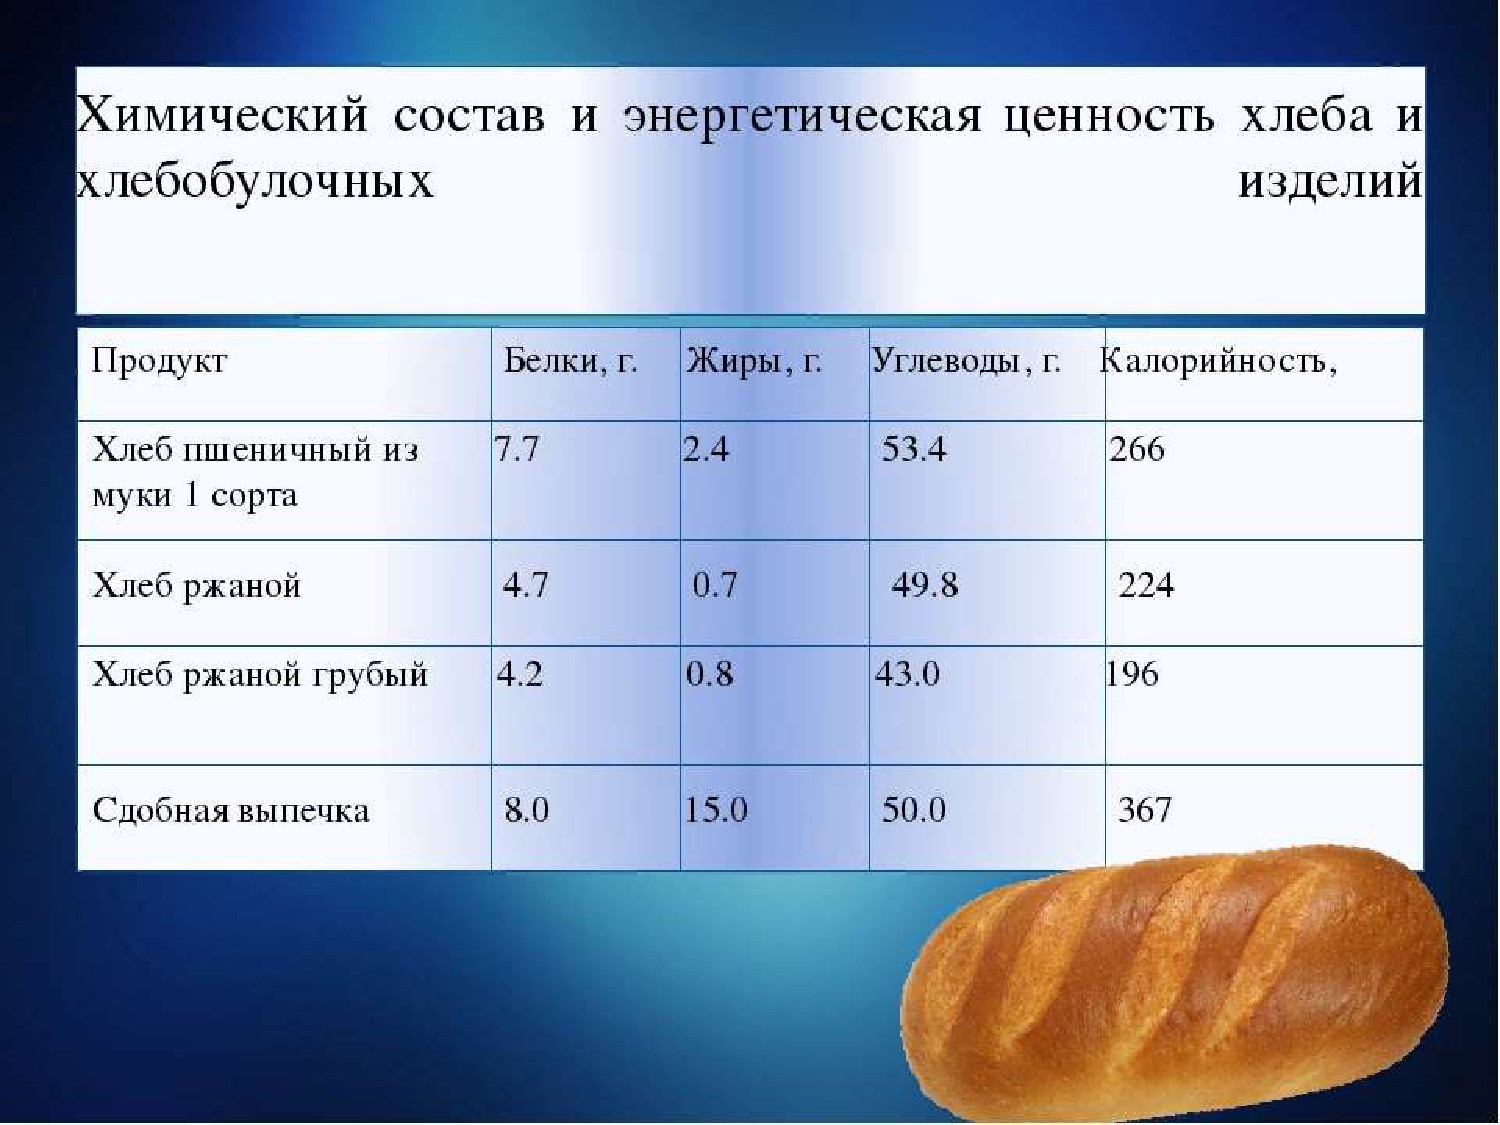 Хлеб в духовке калории. Хлеб калорийность на 100 грамм. Хлеб пищевая ценность в 100г. Хлеб пшеничный ккал в 100 гр. Хлеб пшеничный белки жиры углеводы калорийность.